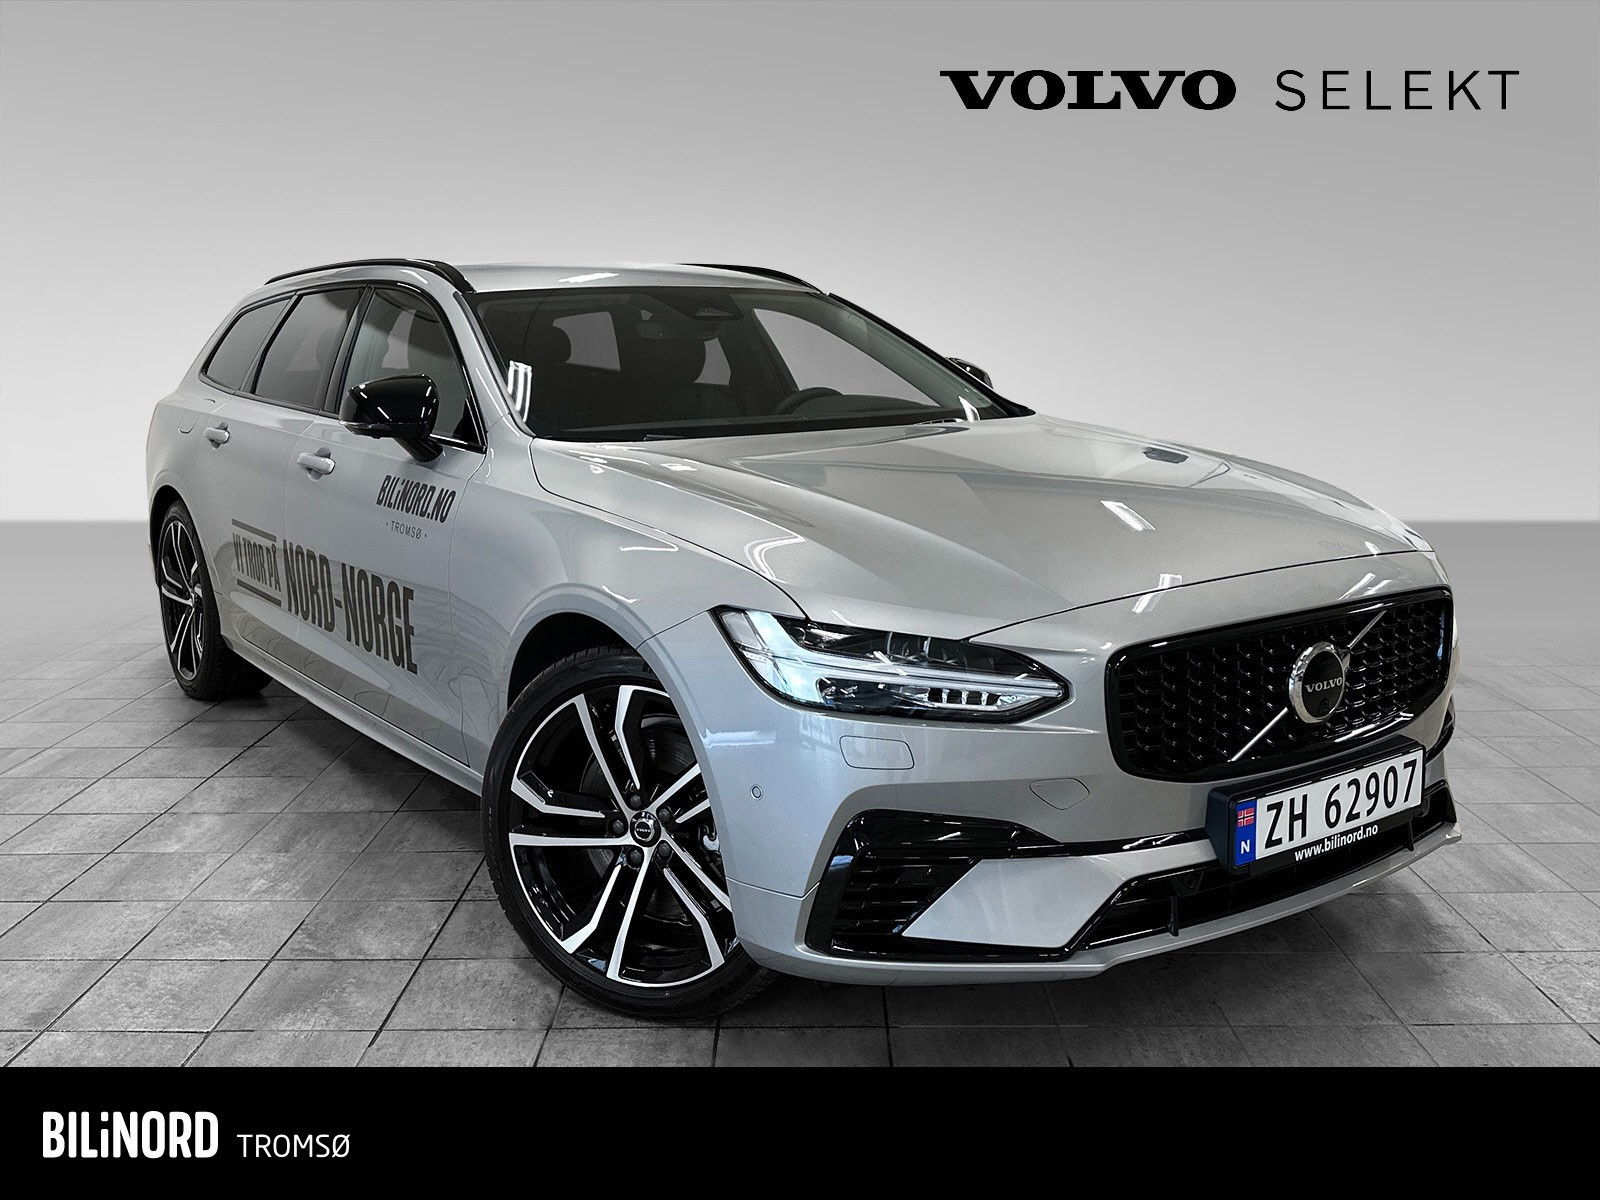 Gylden mulighet for å lease den populære Volvo V90